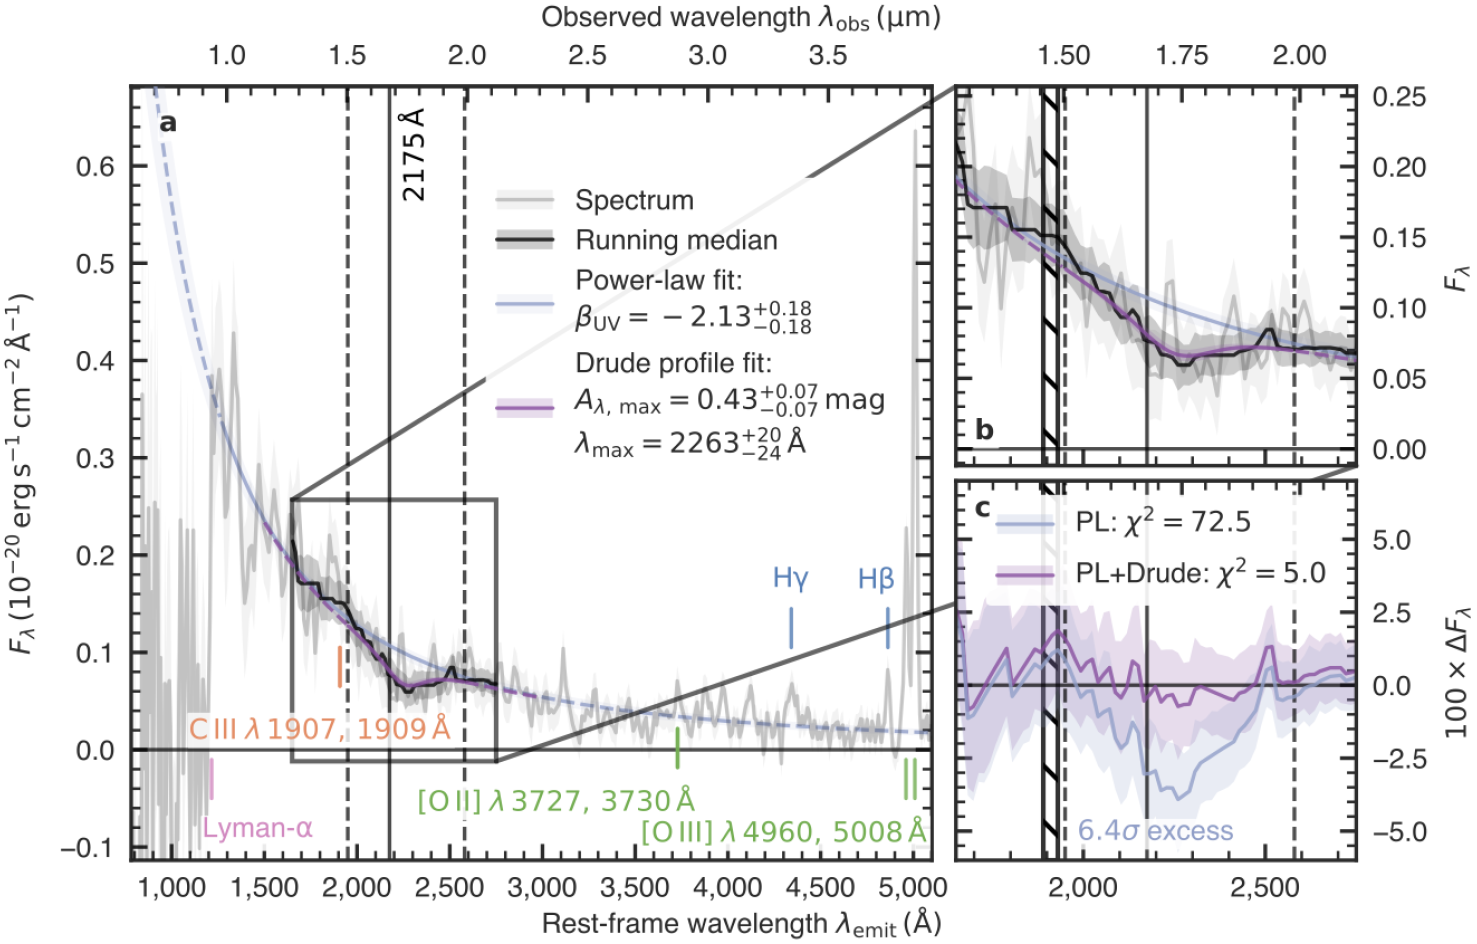 Na ilustracji: (a) Widmo galaktyki JADES-GS-z6 uzyskane przez spektrograf NIRSpec na pokładzie Kosmicznego Teleskopu Jamesa Webba. Na rysunku zaprezentowano długość fali λ dla wartości laboratoryjnych (dolna skala w [Å] → Angstrem, czyli 10-10m) oraz obserwowanych (górna skala w [μm], czyli 10-6m – dla przesunięcia ku czerwieni z=6,71 [1]) Obserwowane widmo reprezentuje szara-ciągła linia, zaś przerywana-niebieska linia pokazuje poziom widma ciągłego w ultrafiolecie, który został dopasowany jako funkcja potęgowa o wykładniku -2,13. Zidentyfikowano kilka struktur w widmie potwierdzających przesunięcie ku czerwieni z=6,71 takich, jak skok Lymana (spadek natężenia w widmie wodoru na granicy serii Lymana w zakresie λλ~912-1216 Å), linie widmowe tlenu [O II] i [O III] oraz wodoru serii Balmera Hβ i Hγ. (b) Powiększony fragment widma z linią absorpcyjną o długości fali około 2175Å, którą  reprezentuje czarna linia (tzw. mediana krocząca, czyli filtr do usuwania wyraźnie odstających danych w materiale obserwacyjnym). W zakresie długości fali ograniczonych pionowymi, przerywanymi liniami dopasowano profil Drudego (fioletowa, ciągła linia) o amplitudzie 0,43 mag i centralnej długości fali λmax=2263Å (226,3 nm) względem poziomu widma ciągłego pokazanego jako funkcja potęgowa (niebieska, ciągła linia). Profil Drudego należy rozumieć jak absorpcyjny przekrój czynny w modelu metali w-g Drudego. Zakreskowany obszar wskazuje na linie dubletu C III λλ 1907, 1909Å  (c) Różnice w strumieniu promieniowania (ΔFλ) w zakresie długości fali 2000-2400Å są największe przy dopasowaniu do danych obserwacyjnych tylko funkcji potęgowej (PL / niebieska linia). Natomiast znacznie lepszym rozwiązaniem jest dopasowanie funkcji potęgowej + profilu Drudego (PL + Drude / fioletowa linia). Cieniowania reprezentują tutaj błąd 1σ. Źródło (CC BY 4.0): arXiv:2302.05468 [astro-ph.GA]